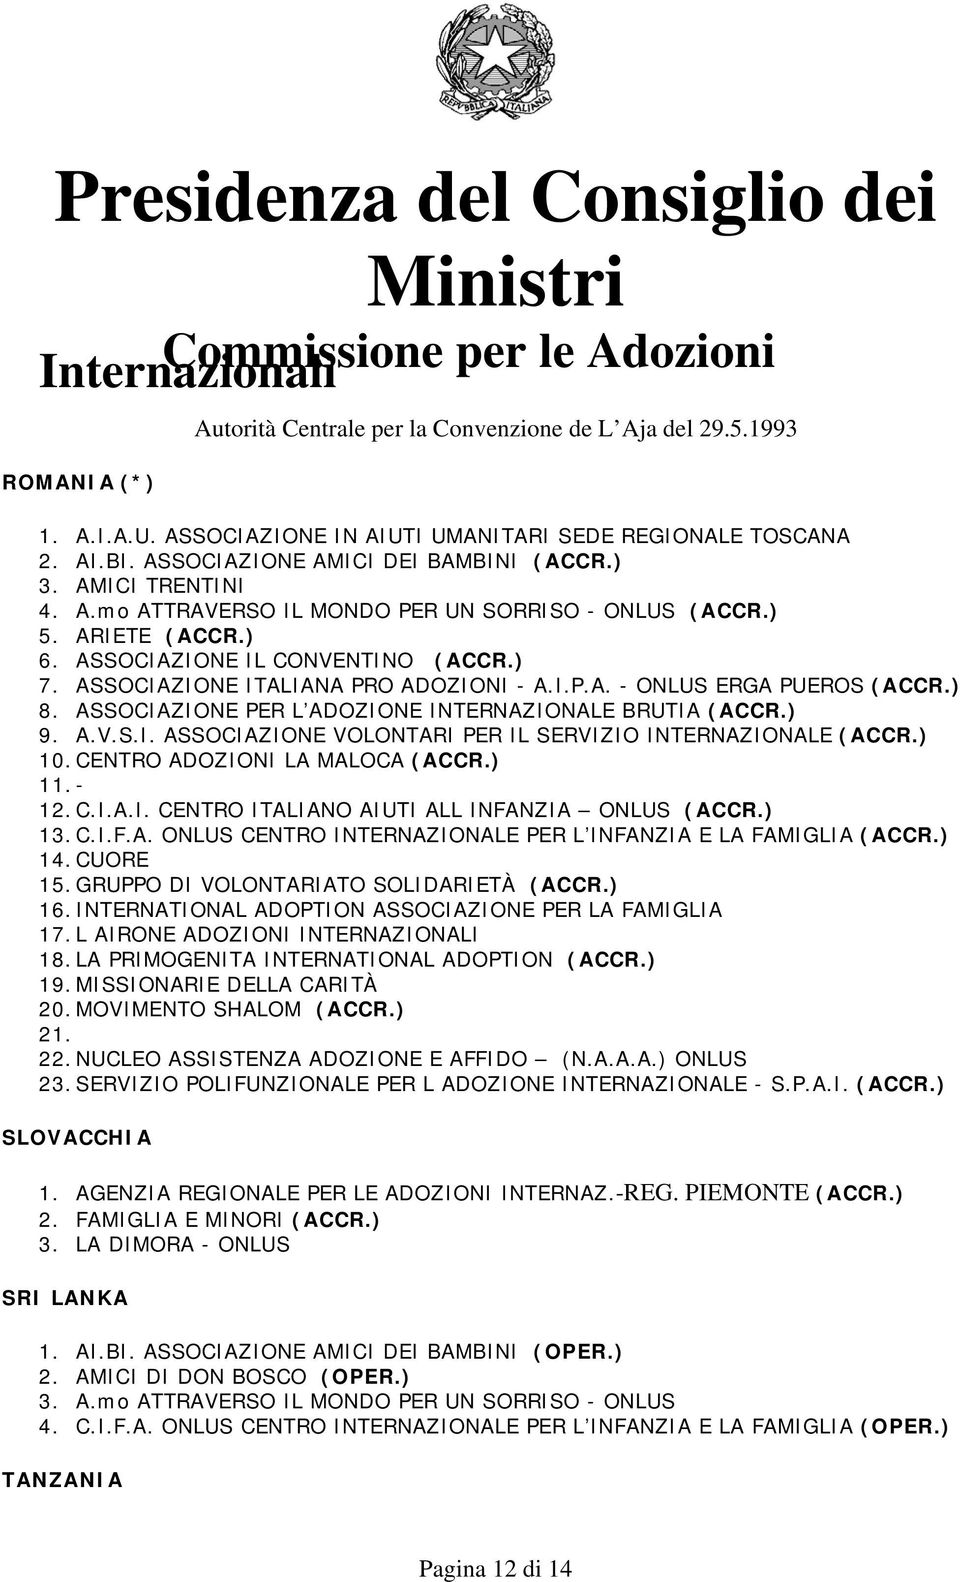 A.V.S.I. ASSOCIAZIONE VOLONTARI PER IL SERVIZIO INTERNAZIONALE (ACCR.) 10. CENTRO ADOZIONI LA MALOCA (ACCR.) 11. - 12. C.I.A.I. CENTRO ITALIANO AIUTI ALL INFANZIA ONLUS (ACCR.) 13. C.I.F.A. ONLUS CENTRO INTERNAZIONALE PER L INFANZIA E LA FAMIGLIA (ACCR.